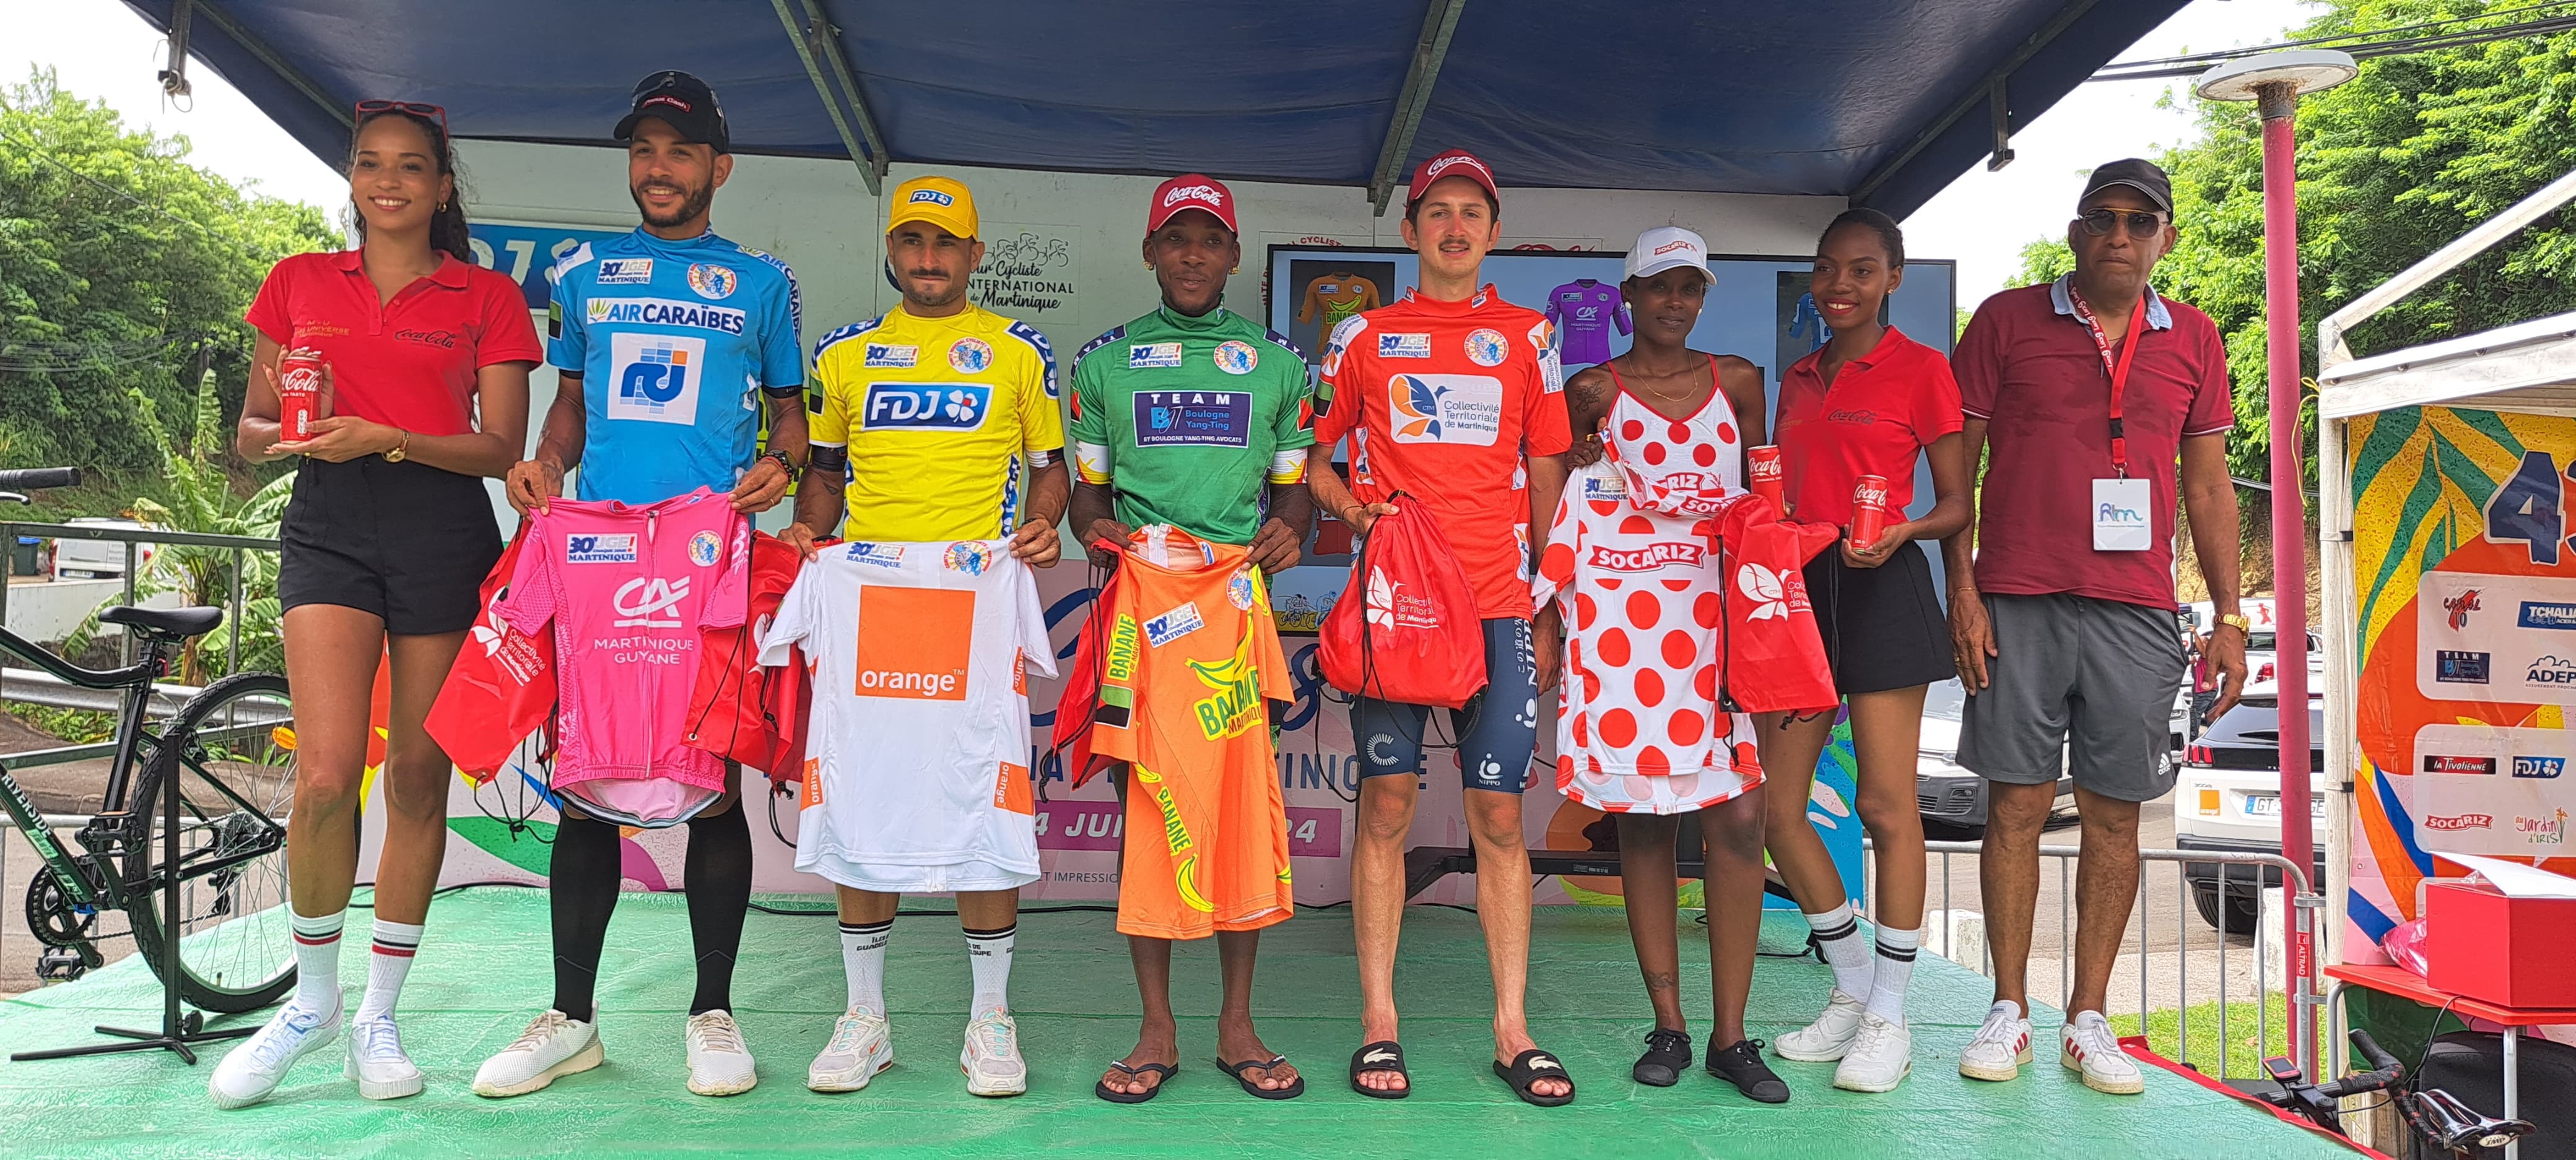     [CLASSEMENTS] Mathieu Pellegrin, nouveau Maillot Jaune après la 3ème étape du Tour Cycliste de Martinique

